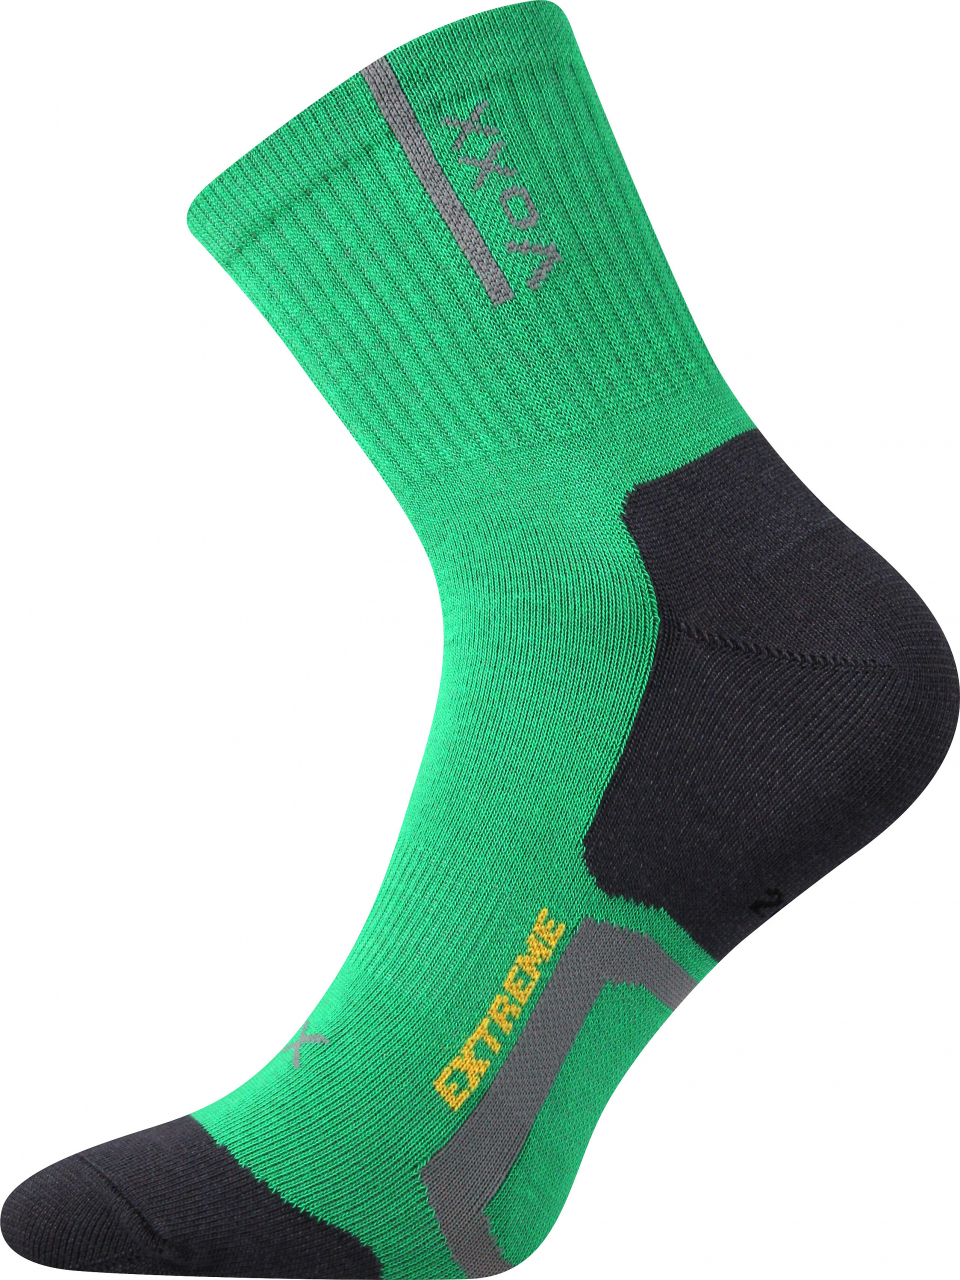 Ponožky antibakteriální Voxx Josef - zelené-černé, 43-46